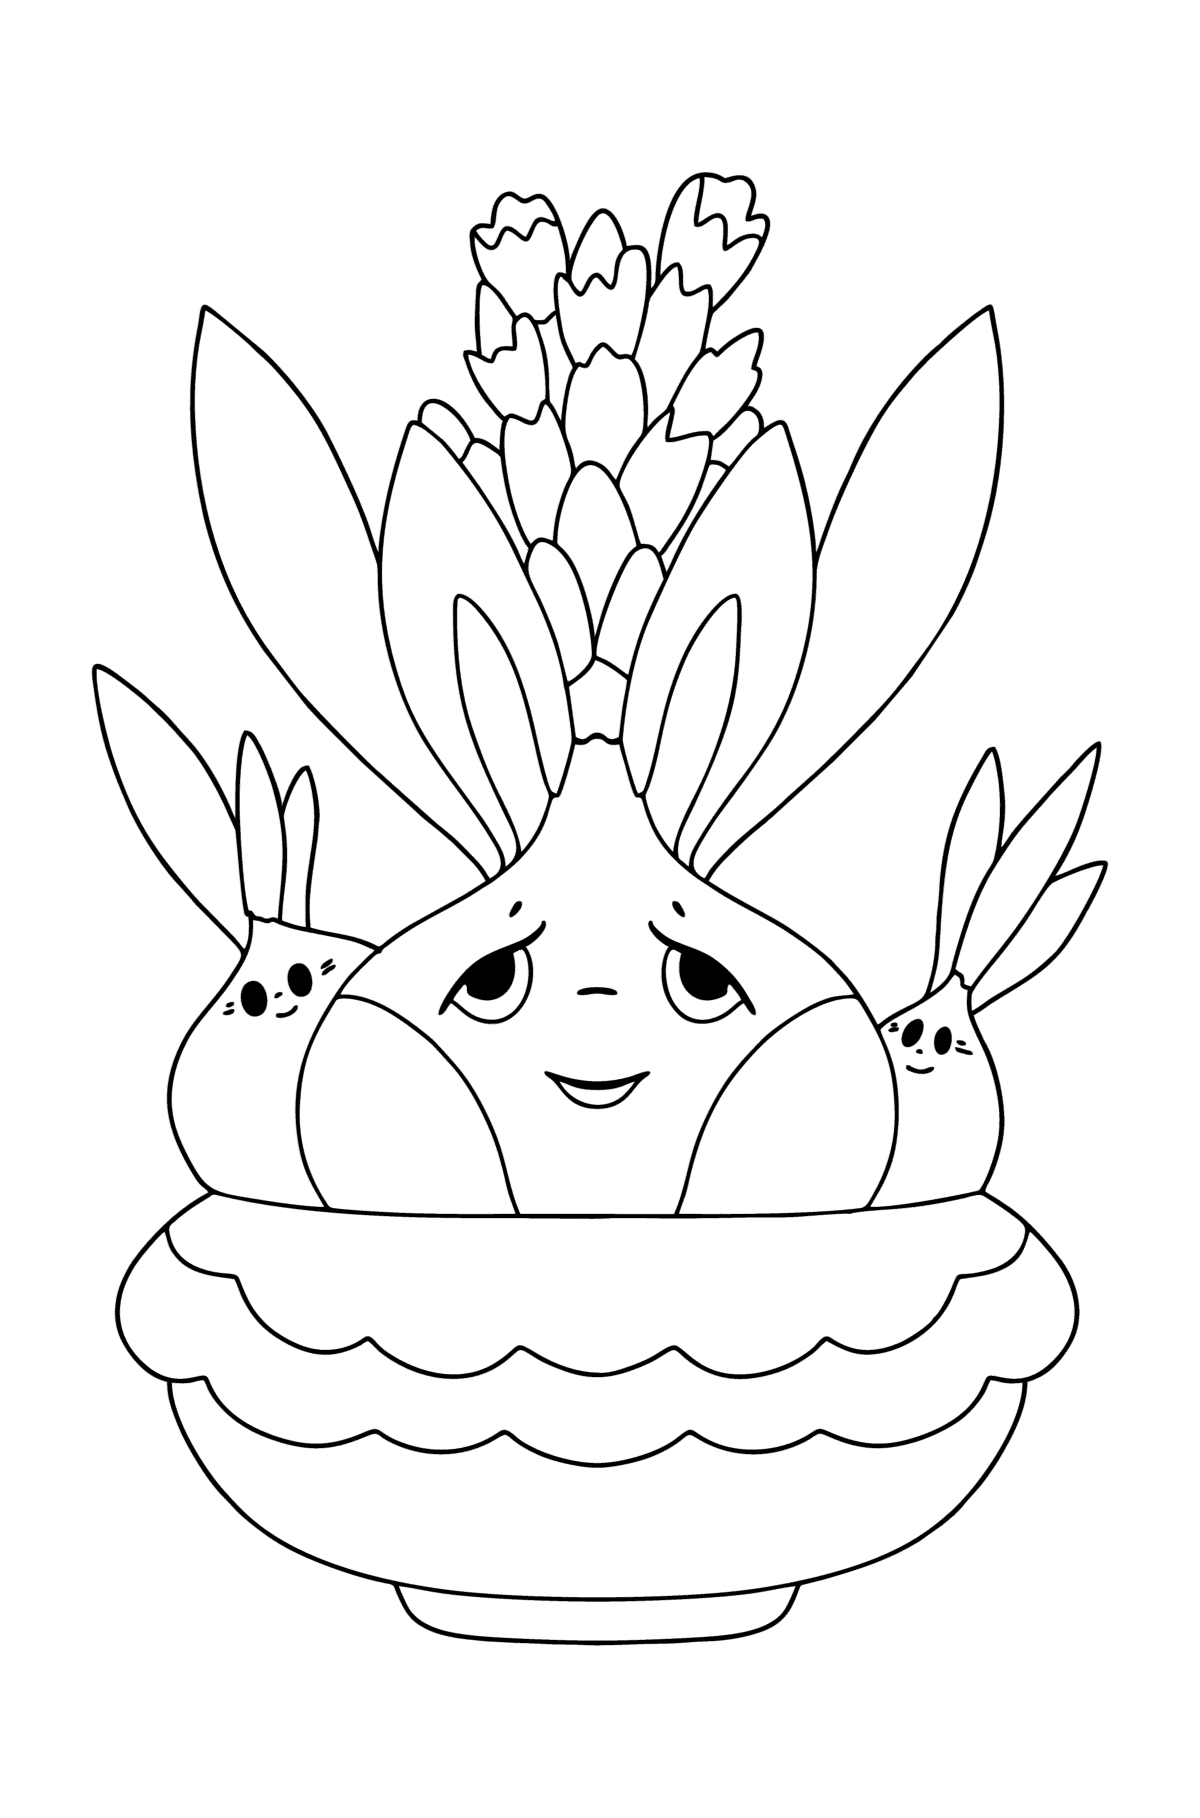 Розмальовка Квіти гіацинта з очима - Розмальовки для дітей